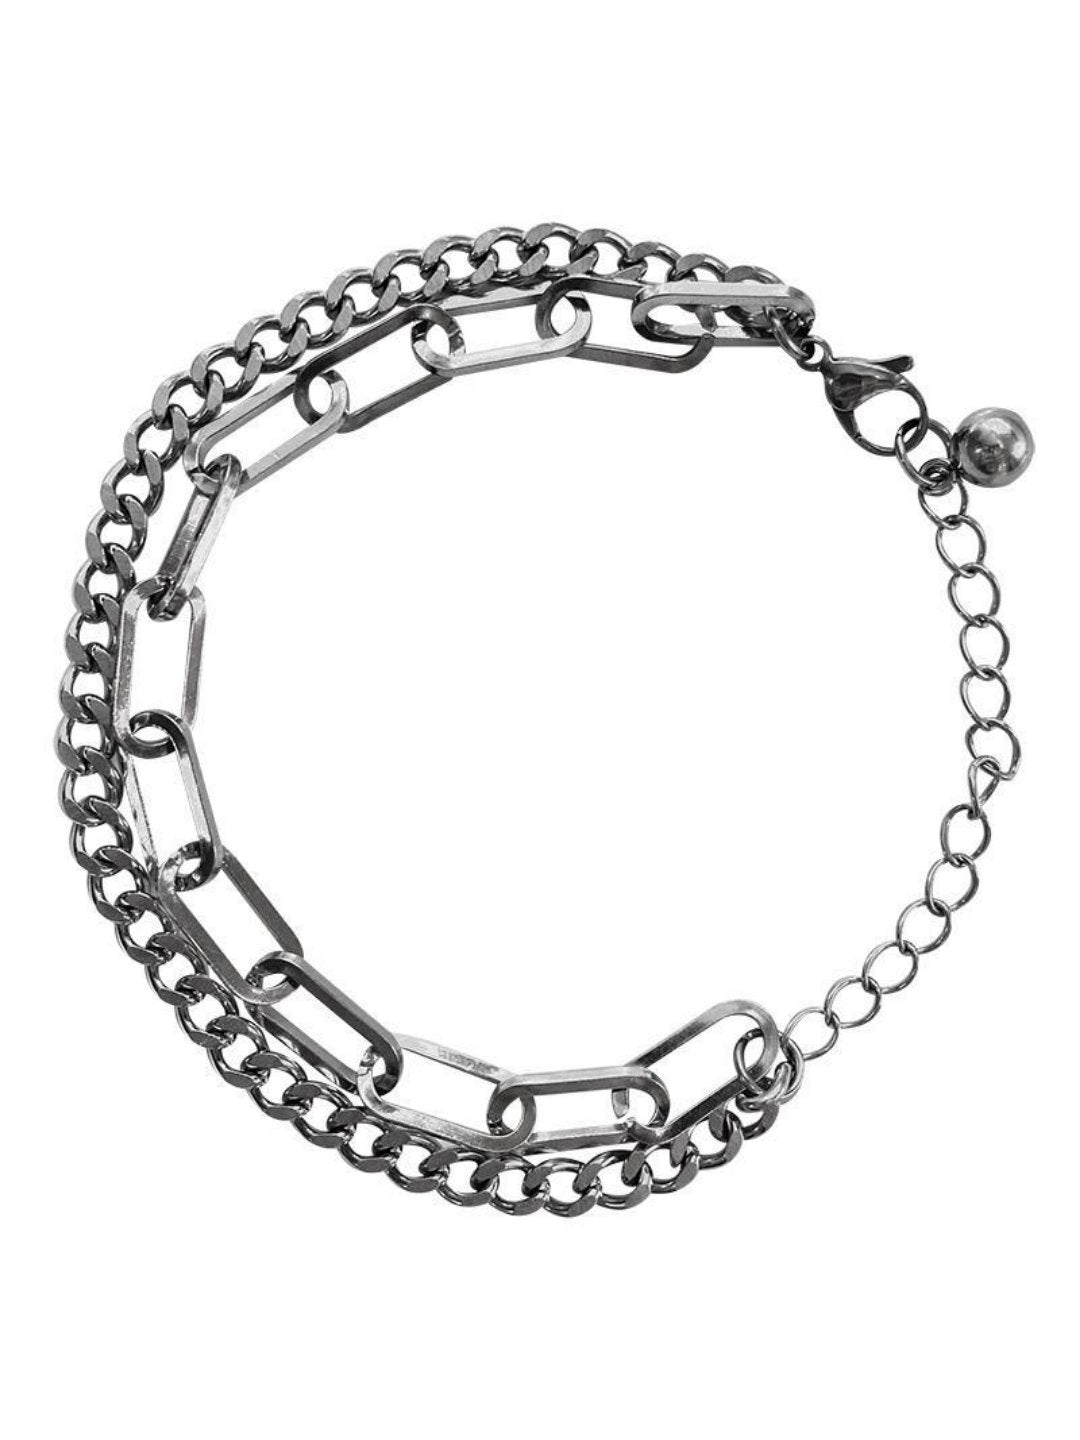 Silver bracelet ax30 - AXES